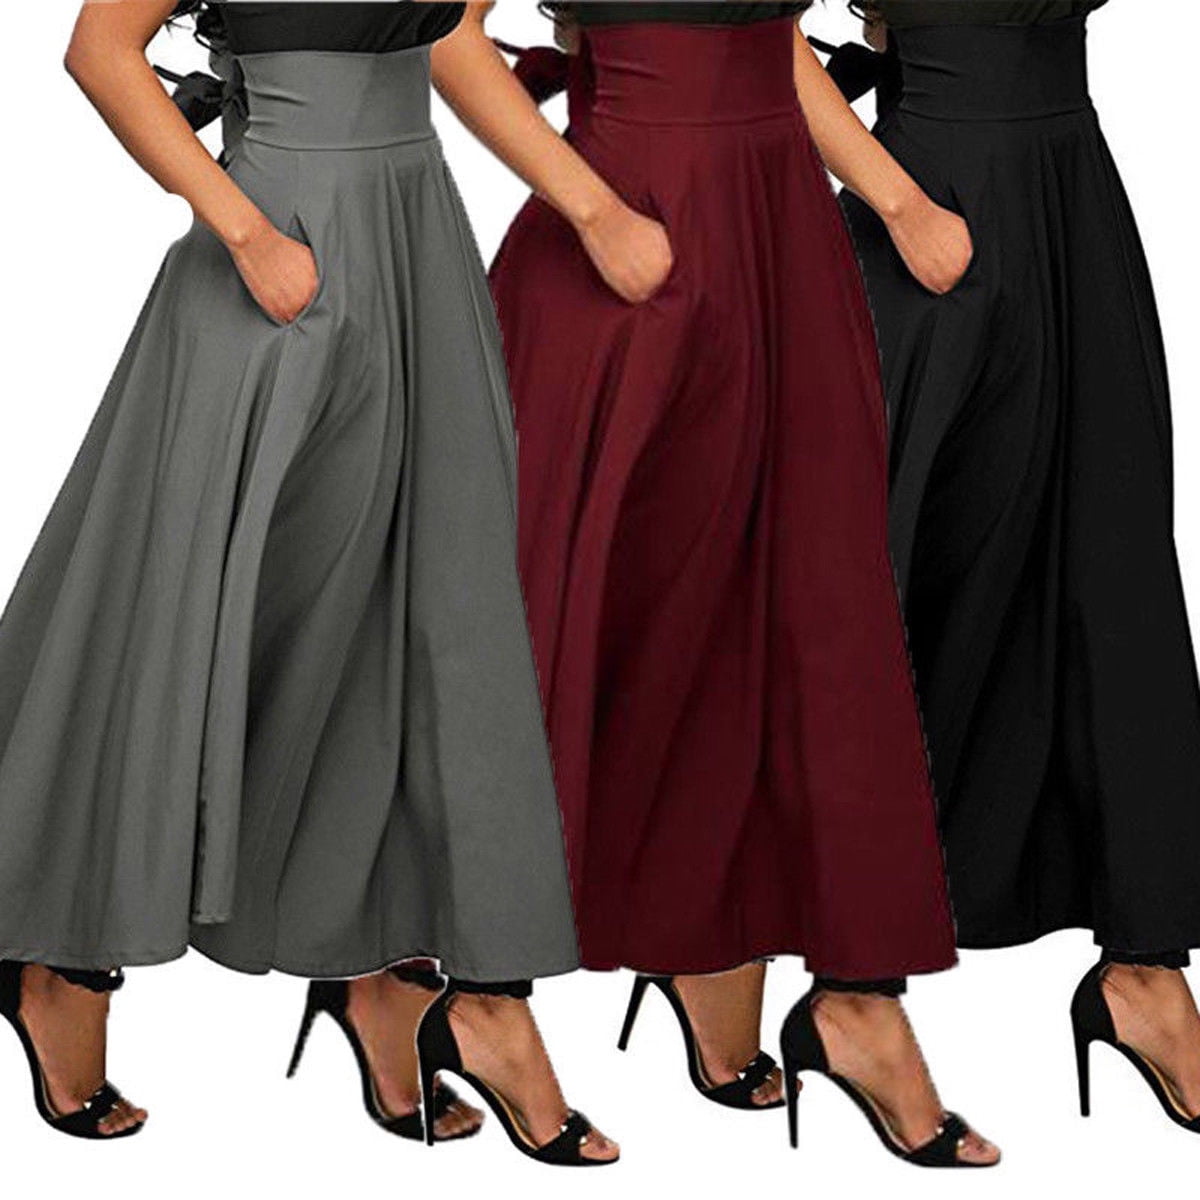 Bagilaanoe High Waist Pleated Long Skirts Women Flared Full Maxi Skirt Swing Dress 0137